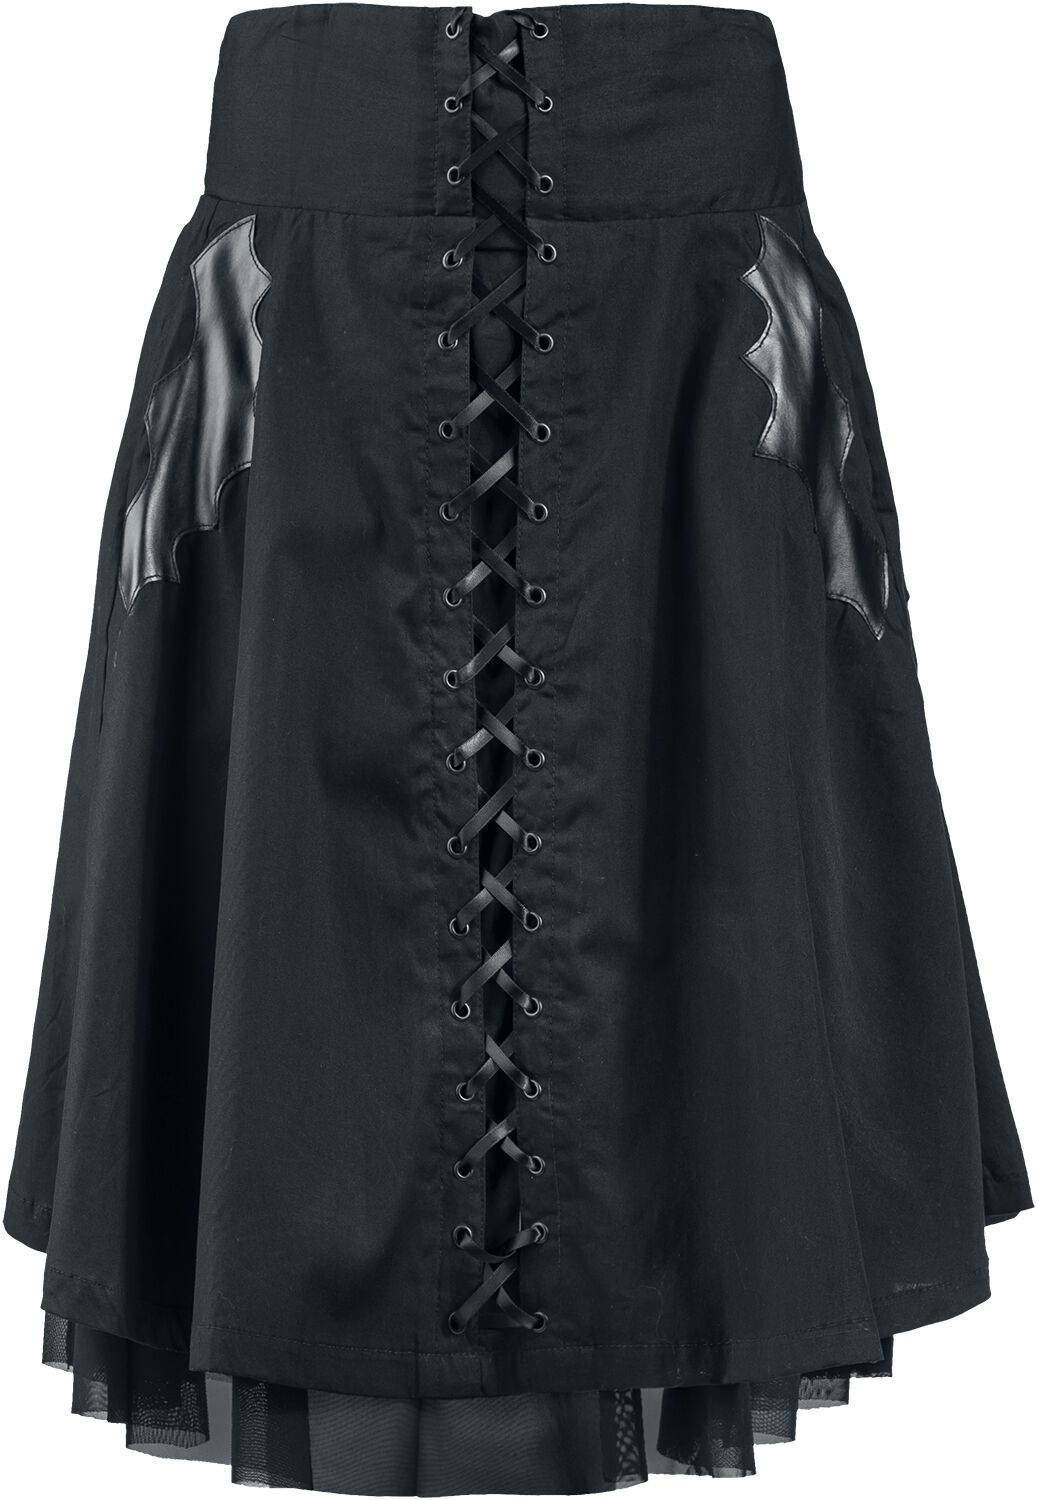 Heartless Nuala Skirt Medium-length skirt black